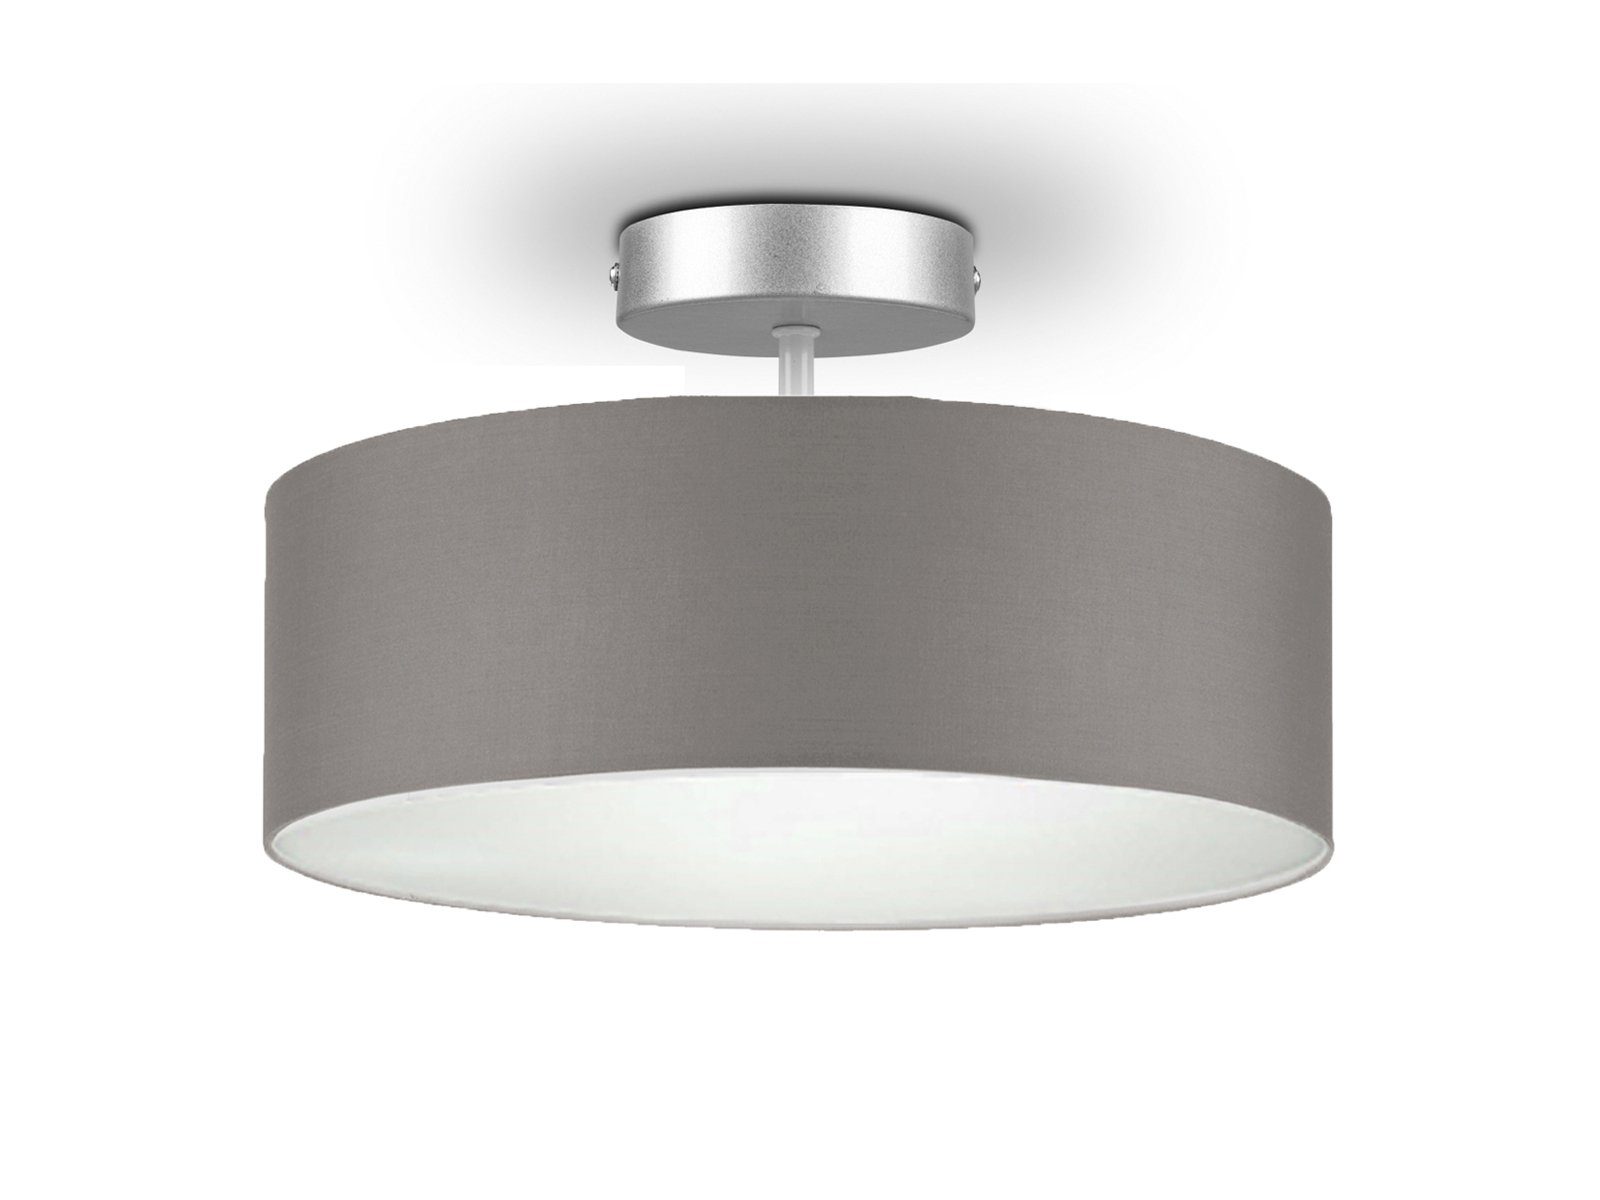 Design Deckenstrahler rund Wohnzimmer Lampe Textil Beleuchtung Flur Leuchte grau 